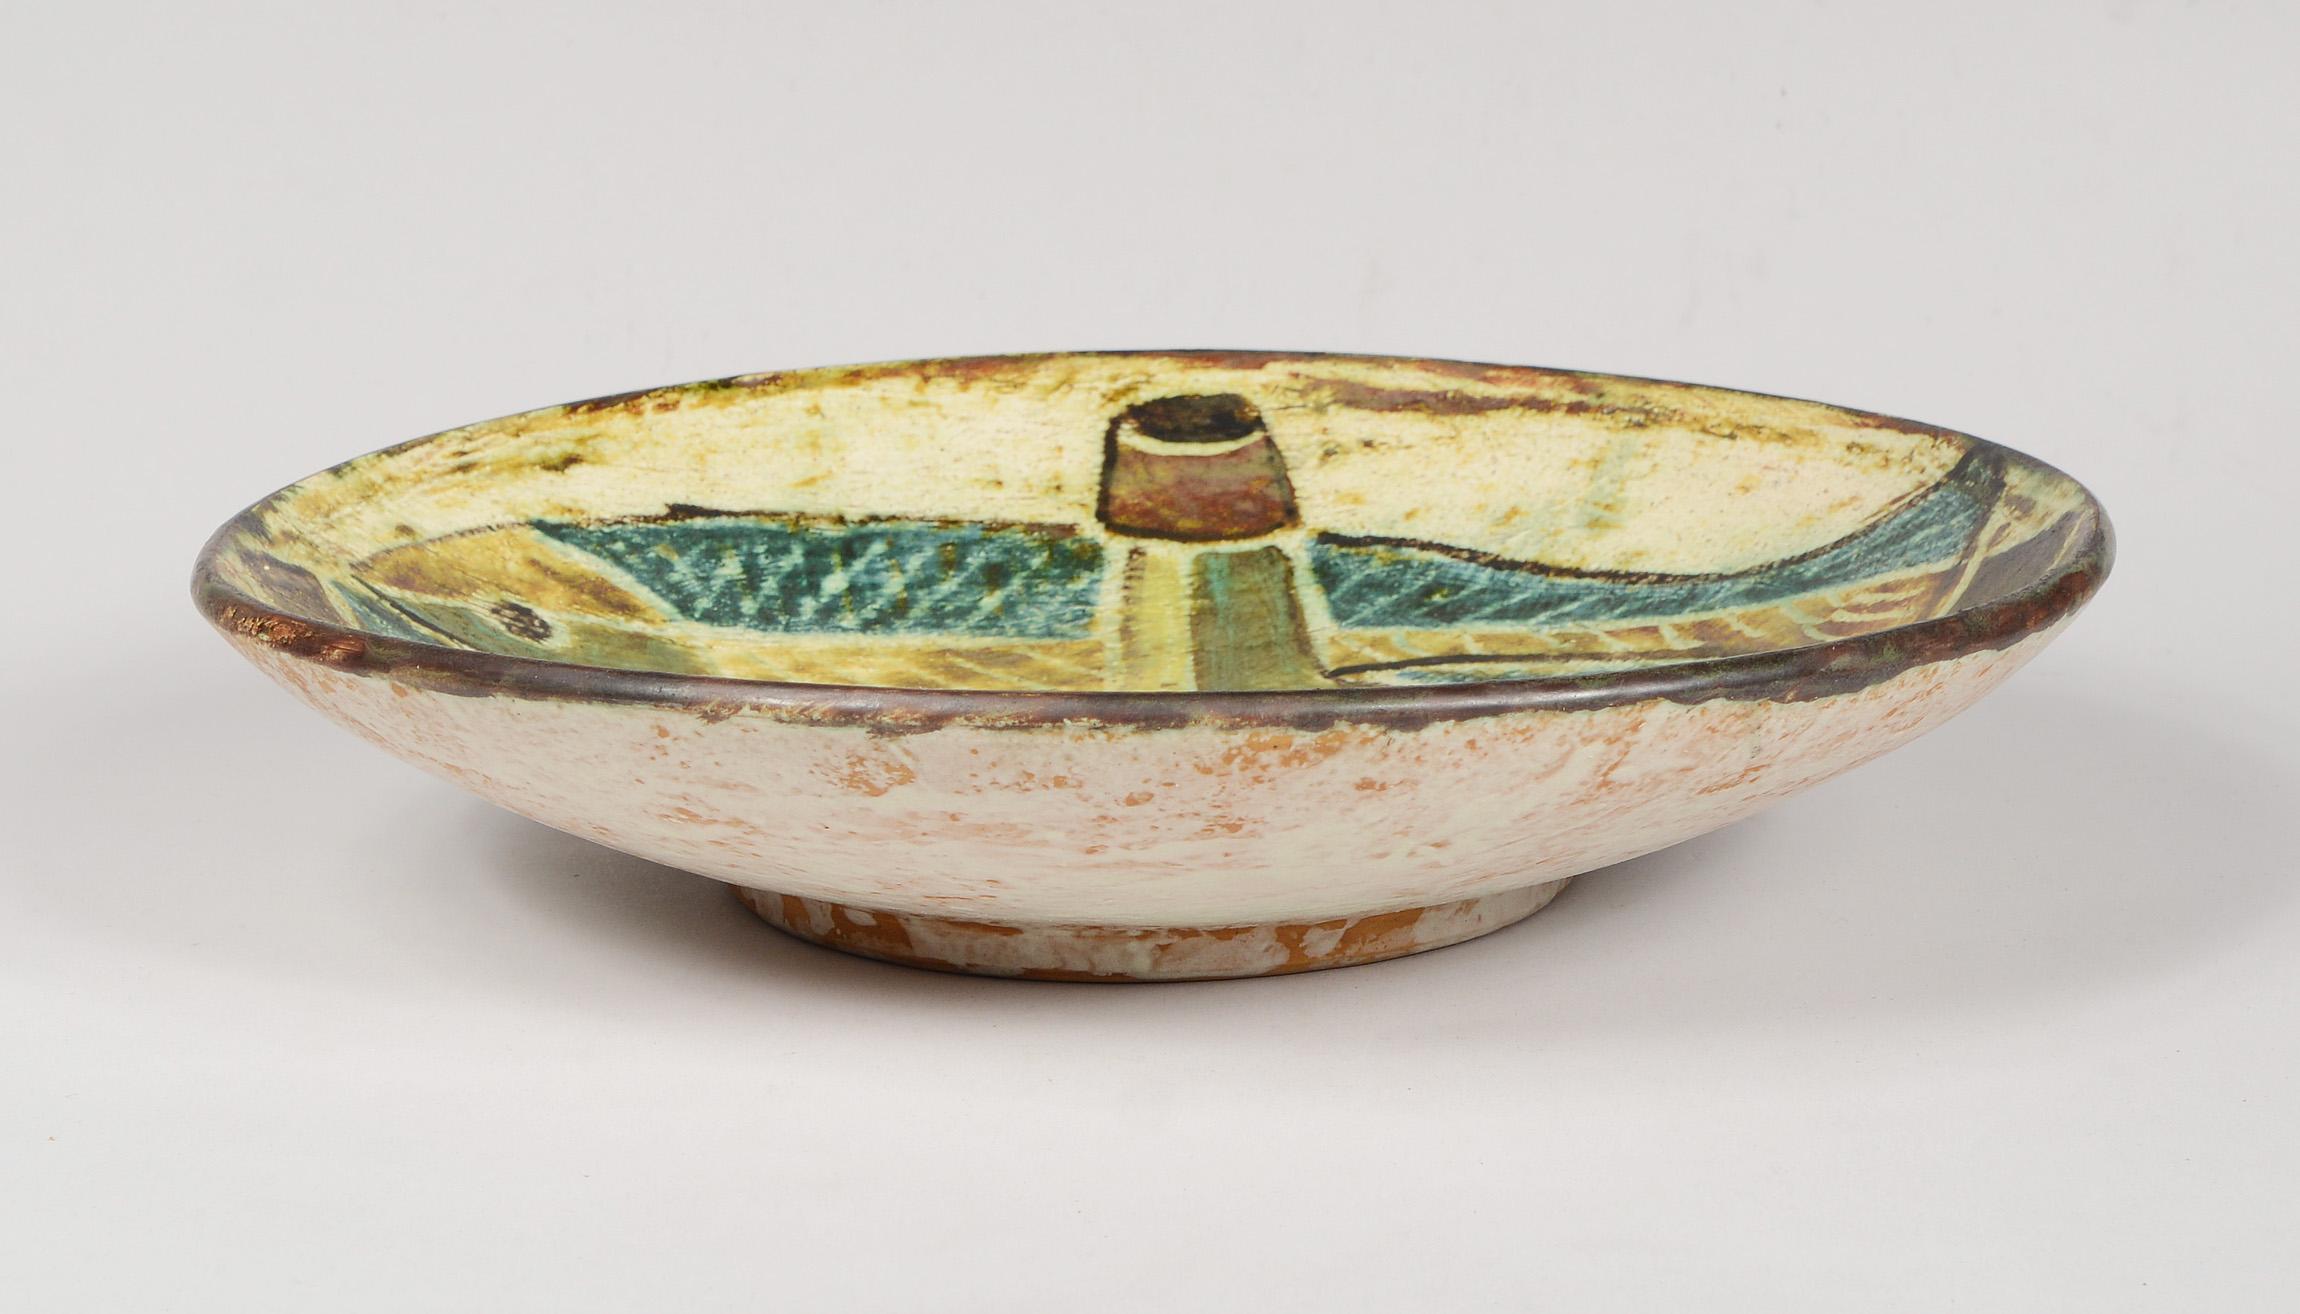 Danish Ceramic Bowl by Preben Herluf Gottschalk Olsen with Cubist Still Life